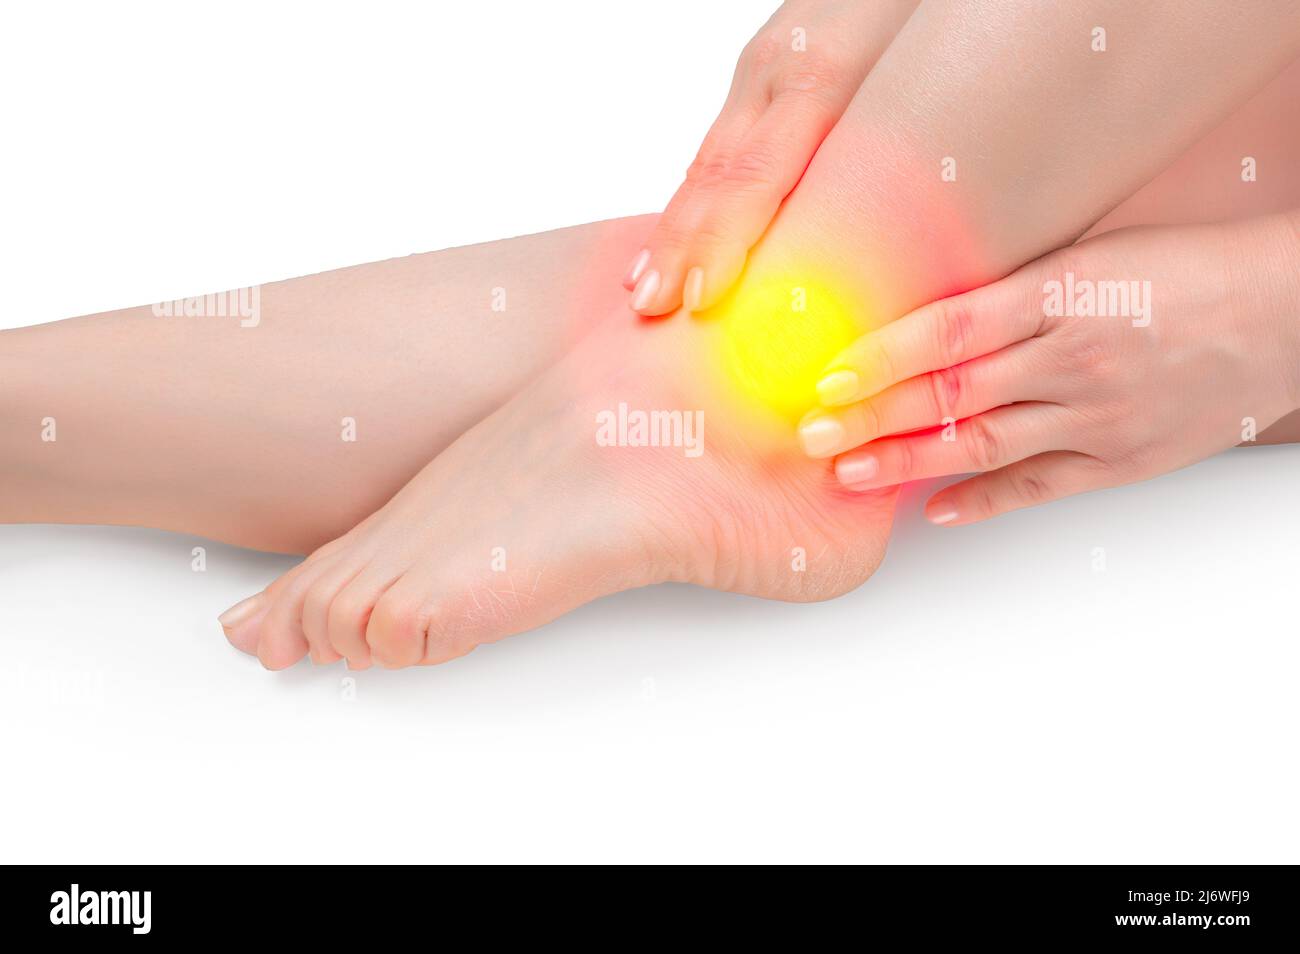 Knöchelschmerzen. Weiblicher Fuß mit Knöchelschmerzpunkt. Schmerzkonzept mit Frau Hände fangen Knöchel. huckle-Knochen-Verletzung beim Menschen, Gelenkschmerzen Menschen medizinisch, Stockfoto